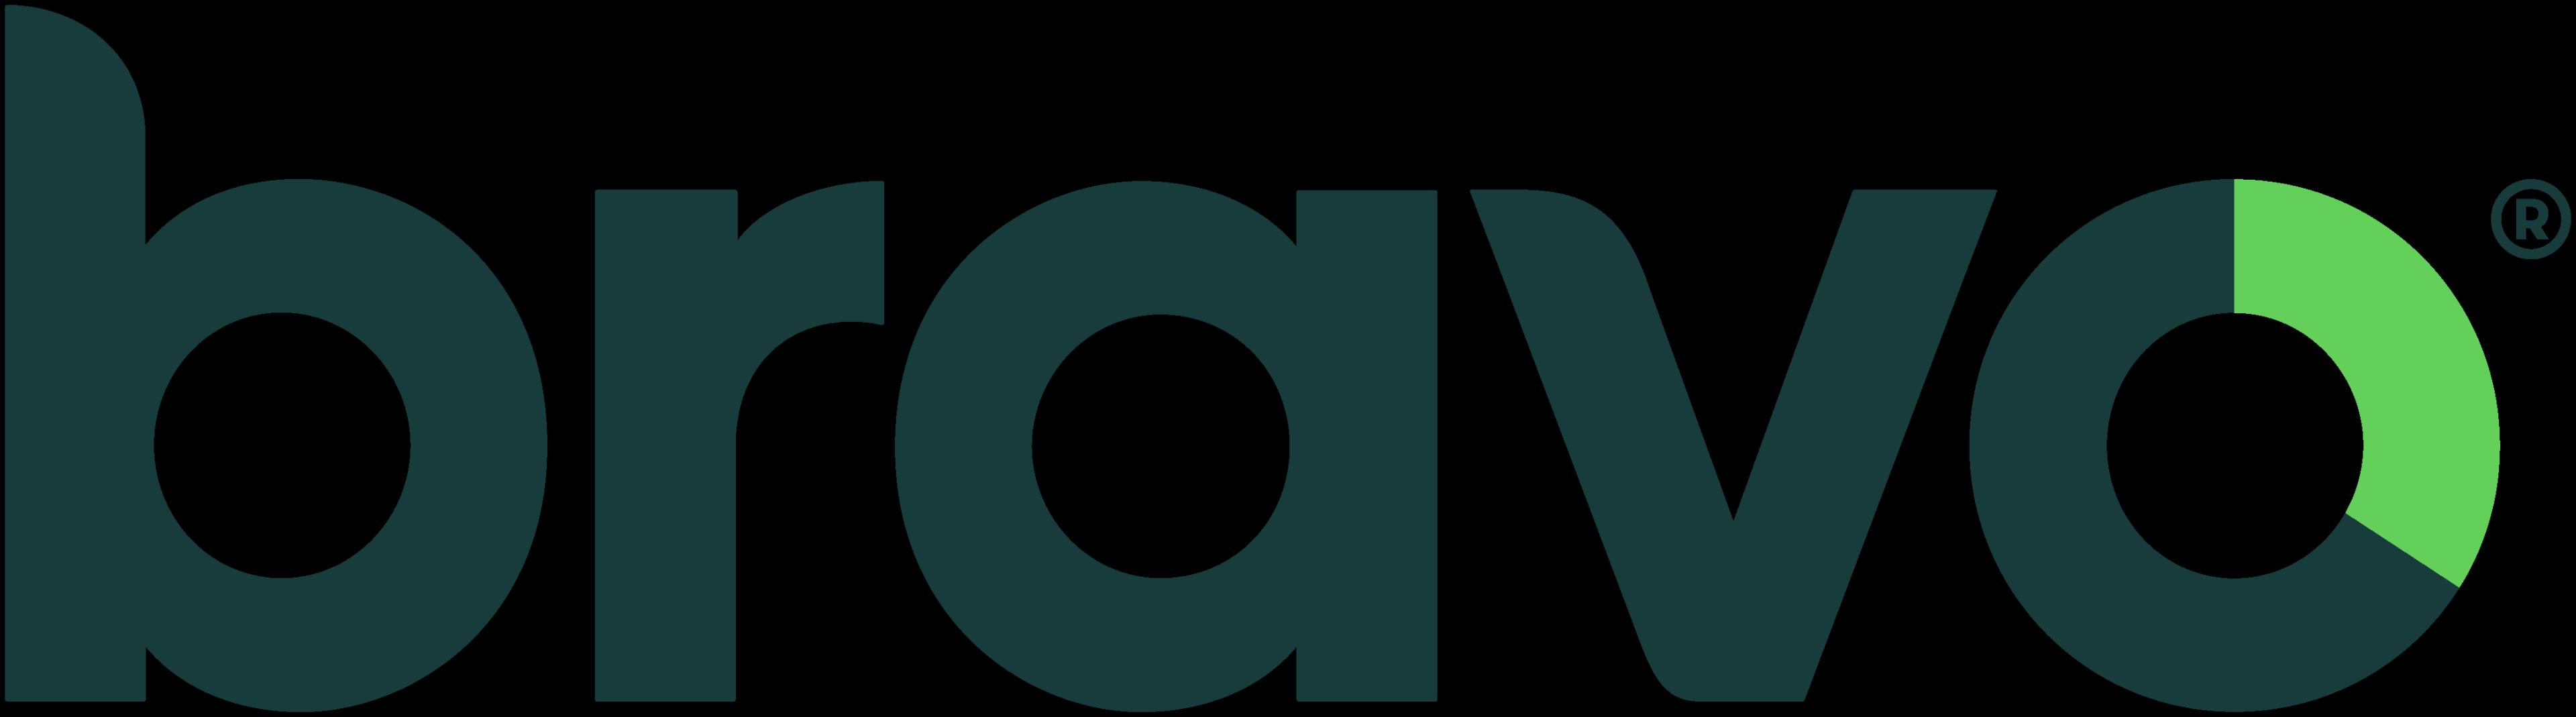 Bravo Wellness_logo